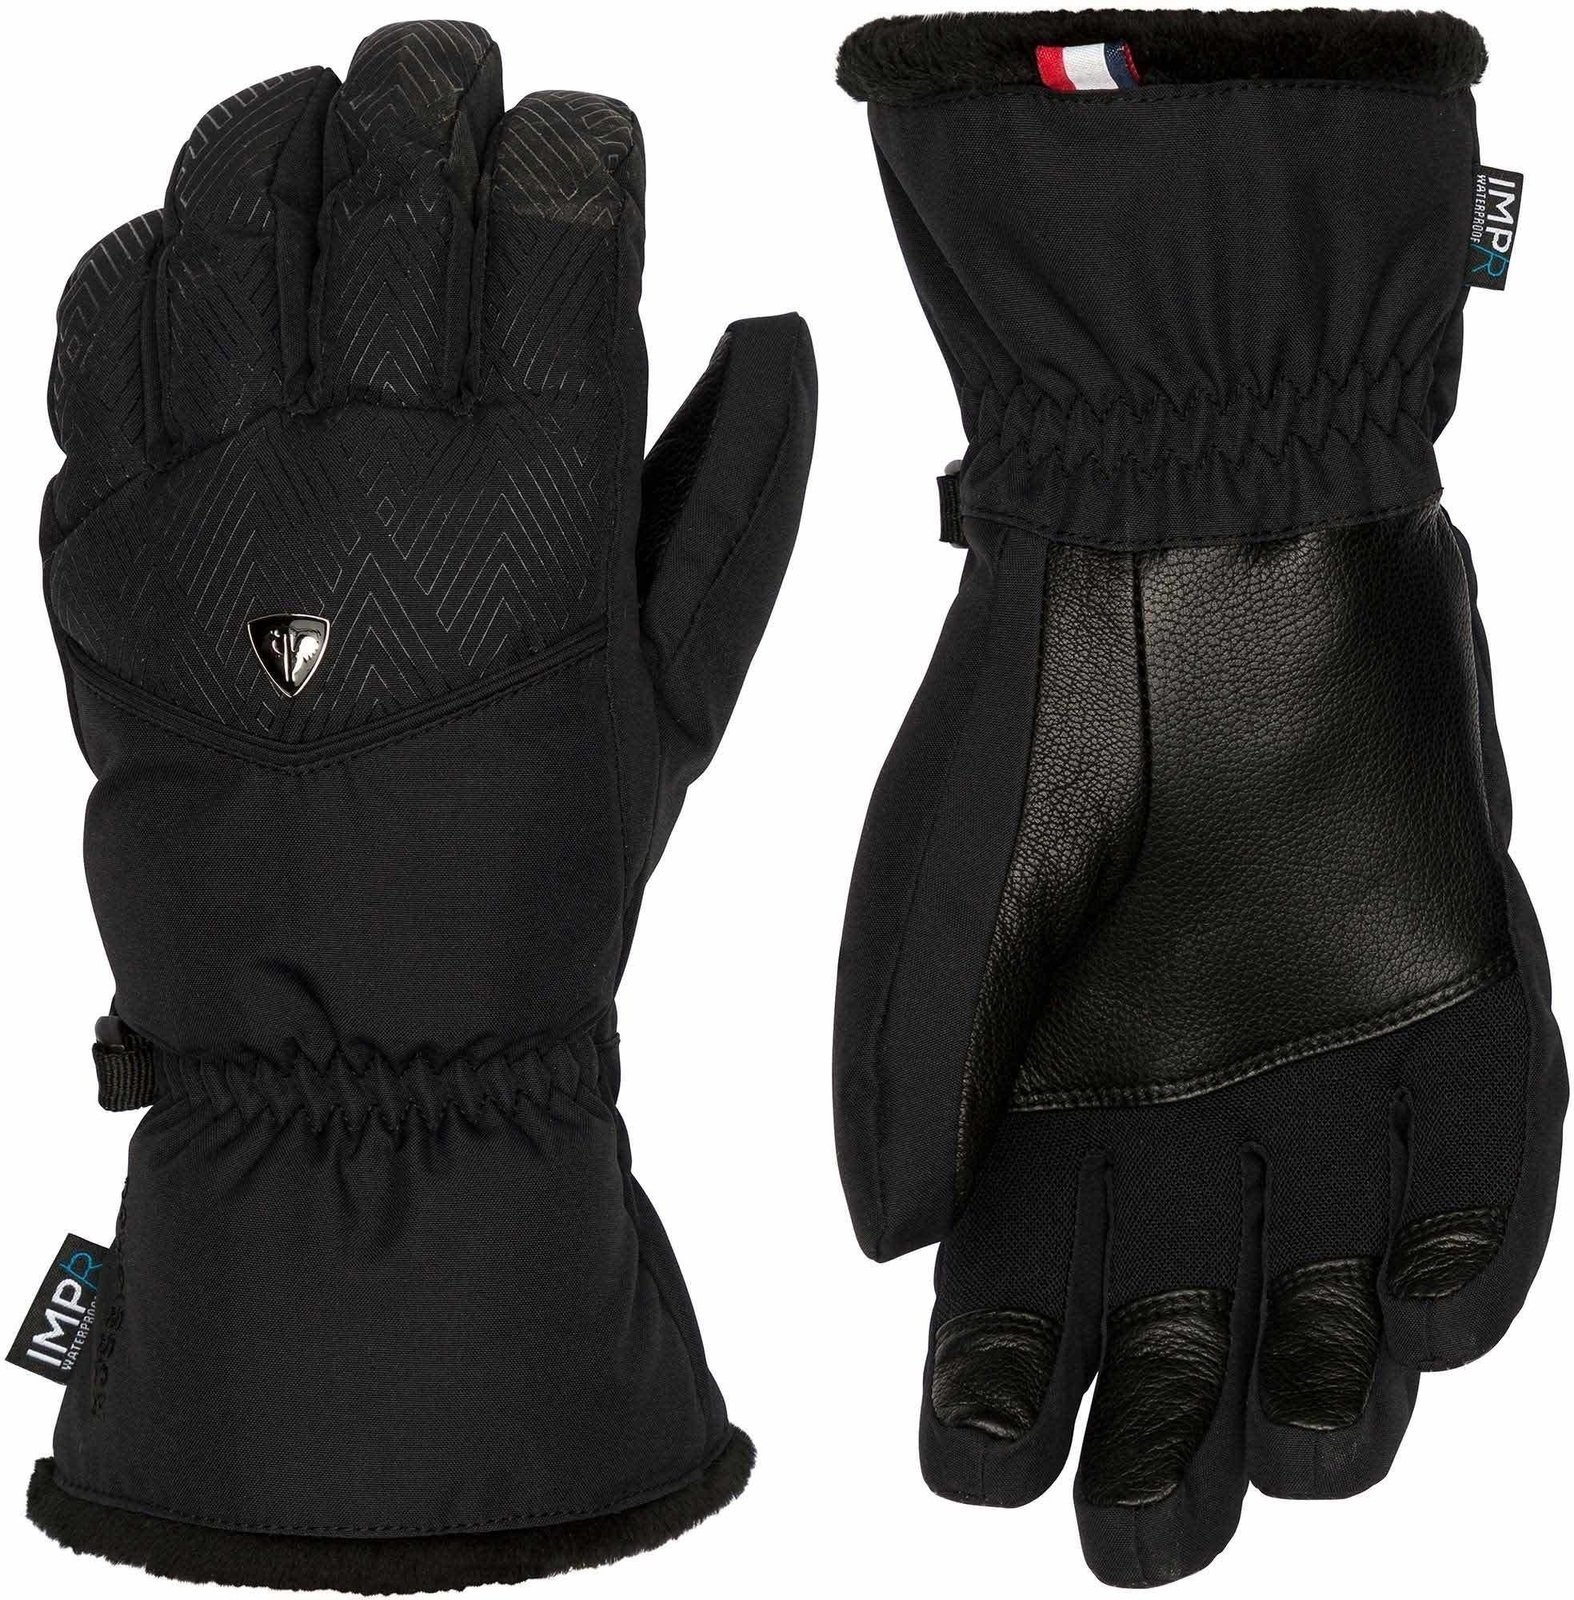 SkI Handschuhe Rossignol Romy IMPR Black M SkI Handschuhe